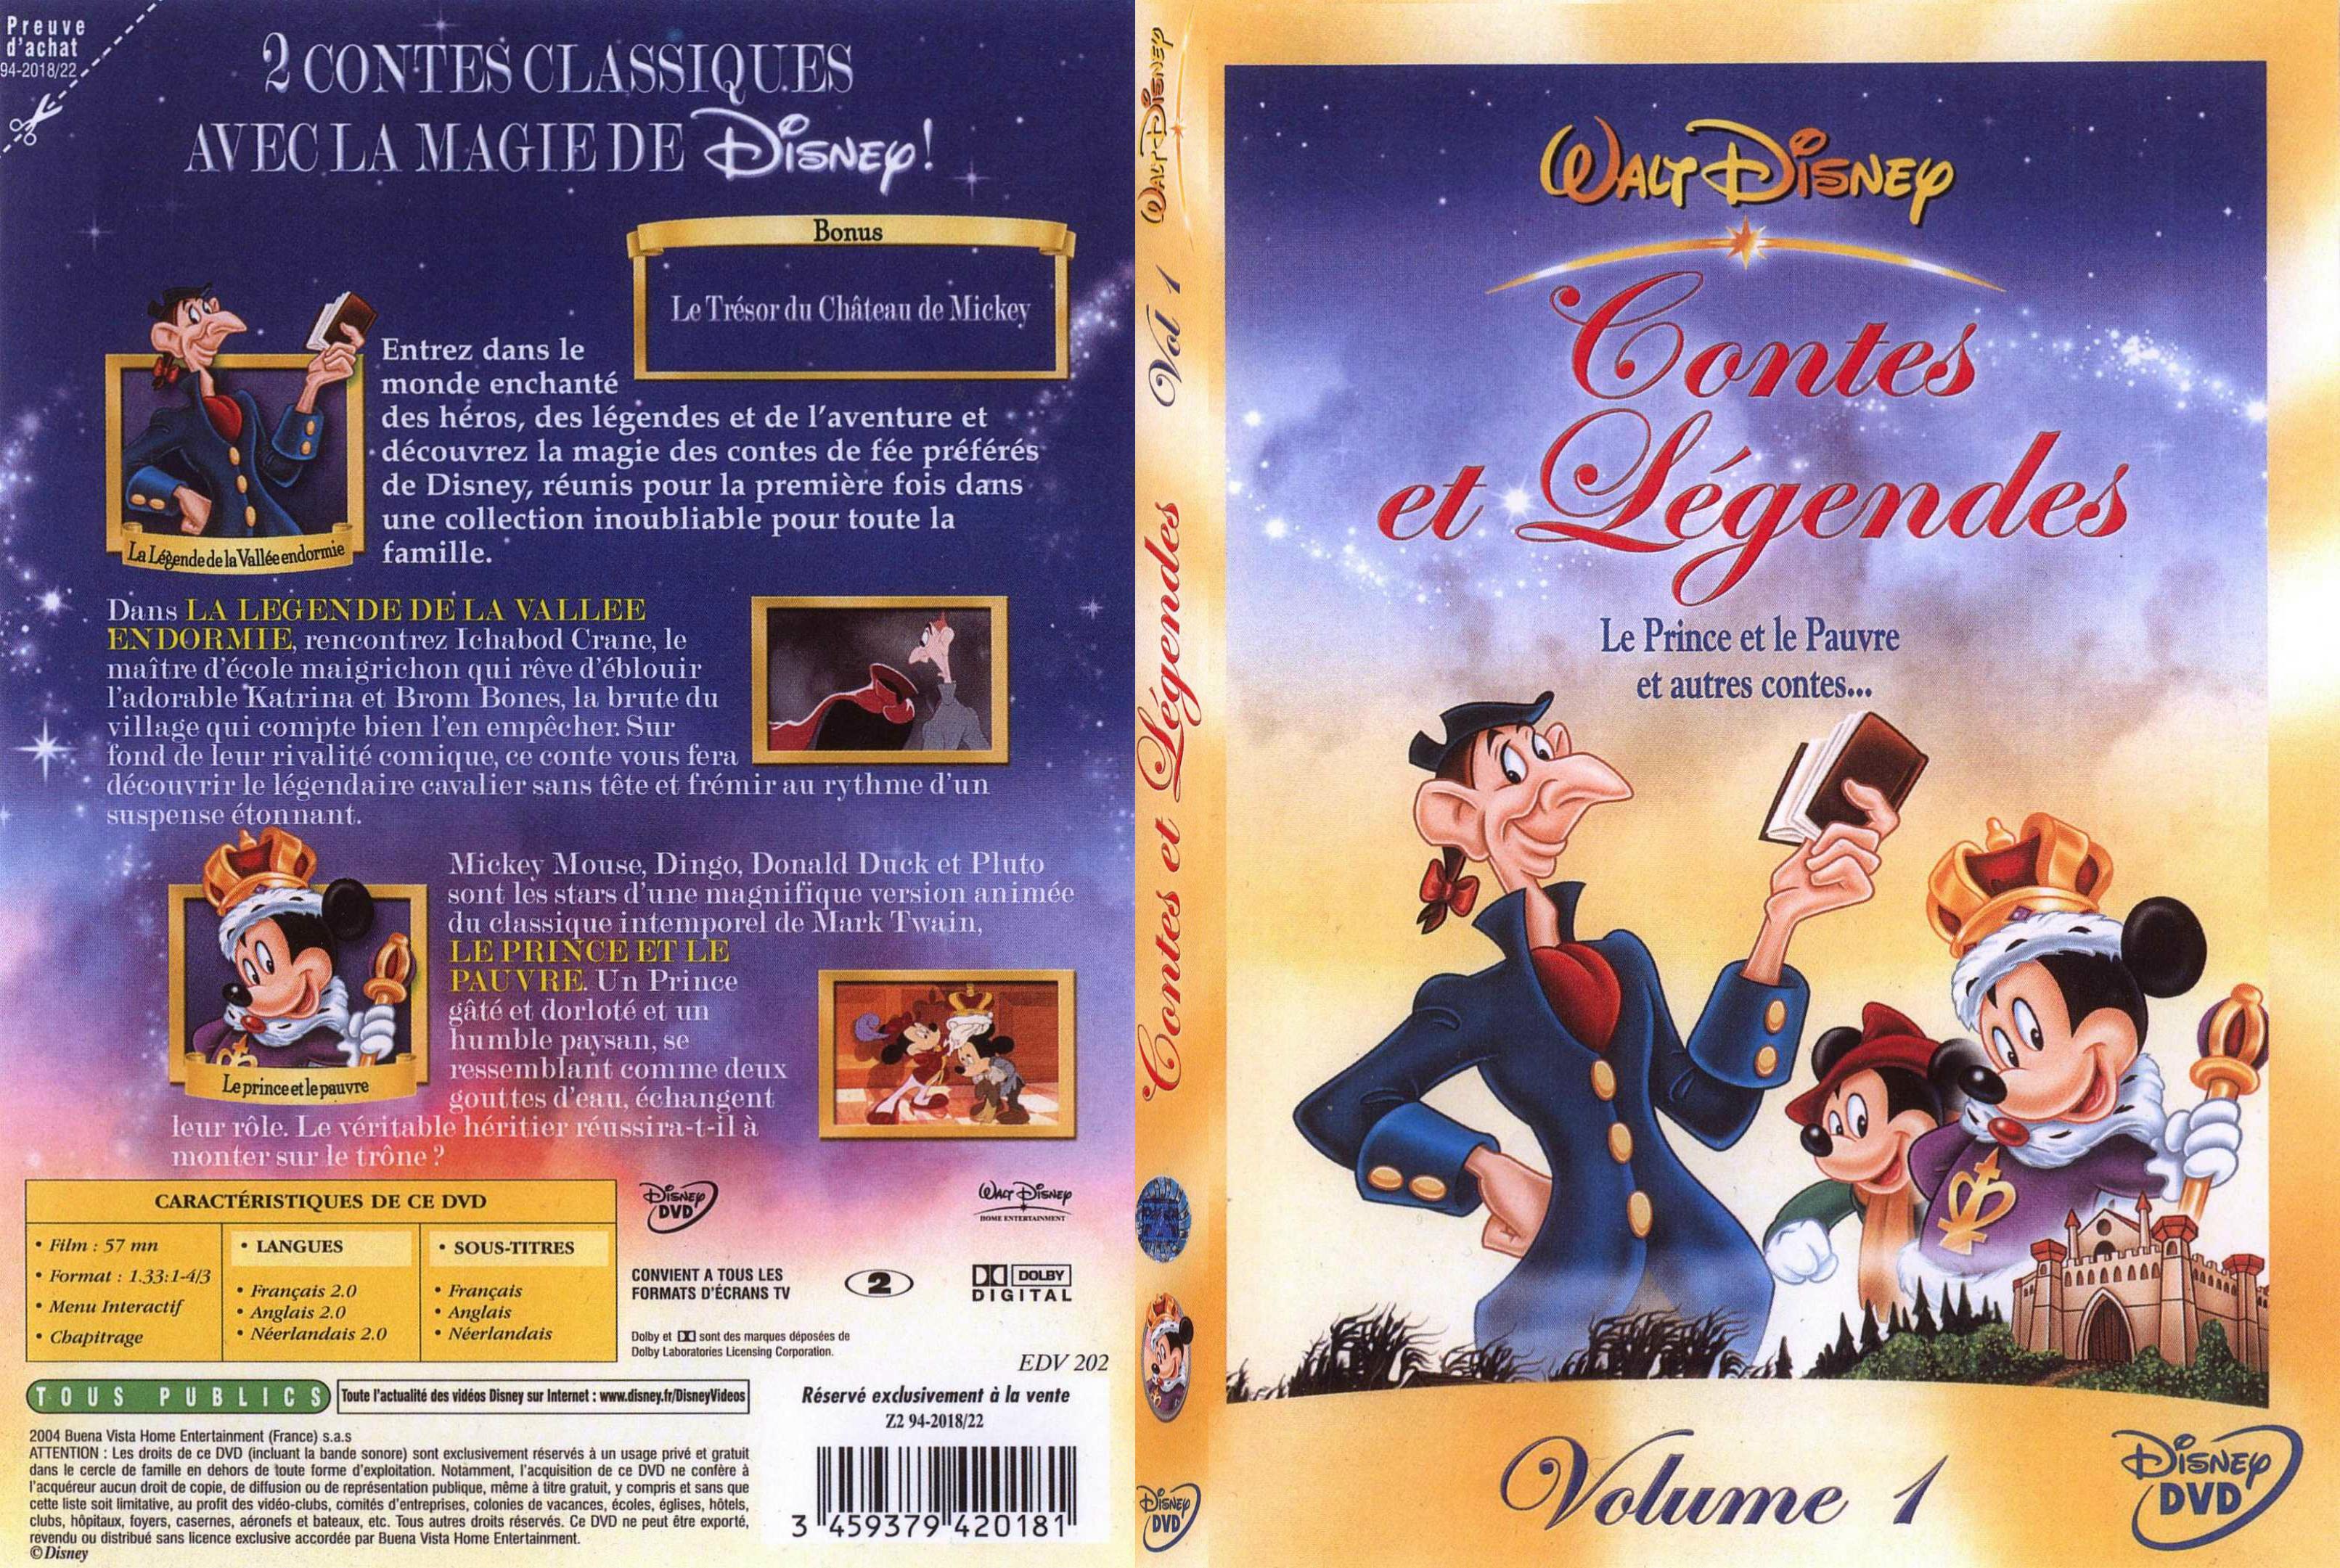 Jaquette DVD Contes et legendes 1 - SLIM